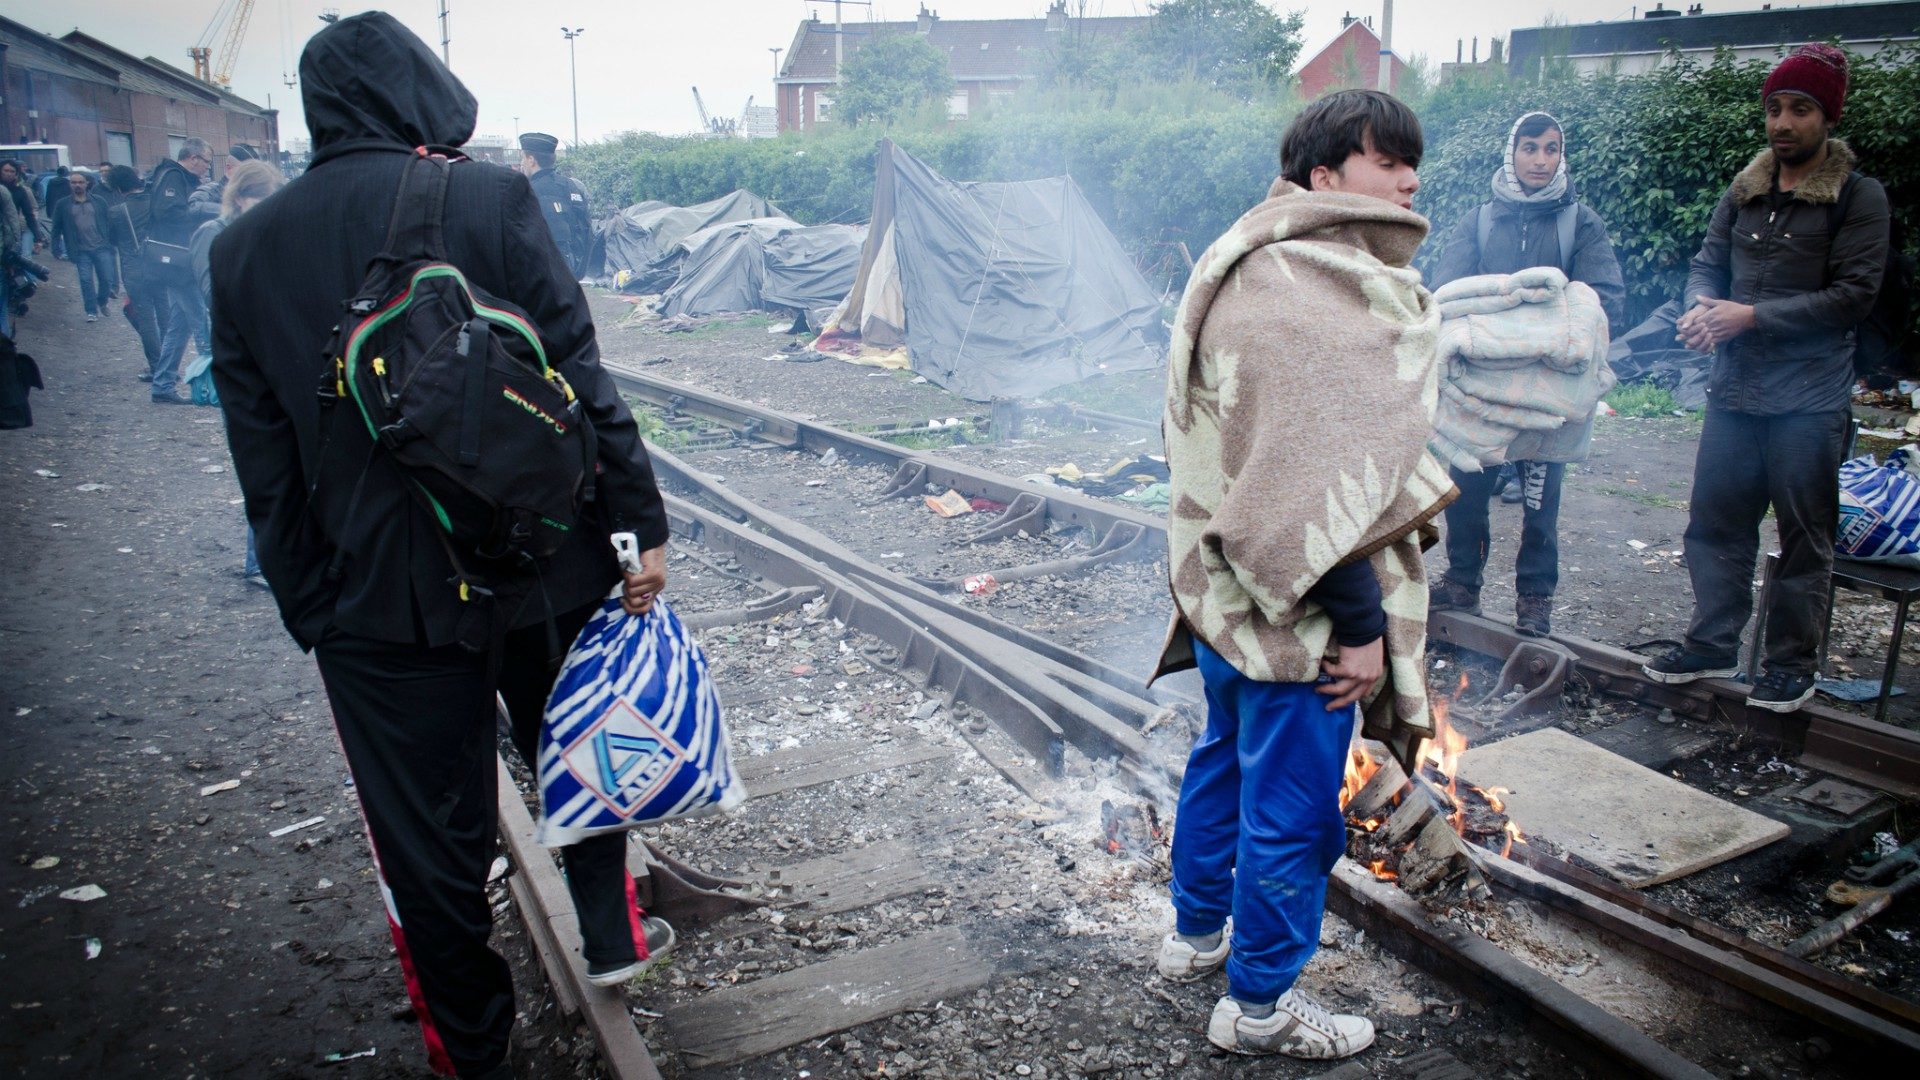 Les mouvements migratoires inquiètent de nombreux Européens (Photo:Squat Le Monde/Flickr/CC BY-NC-ND 2.0)